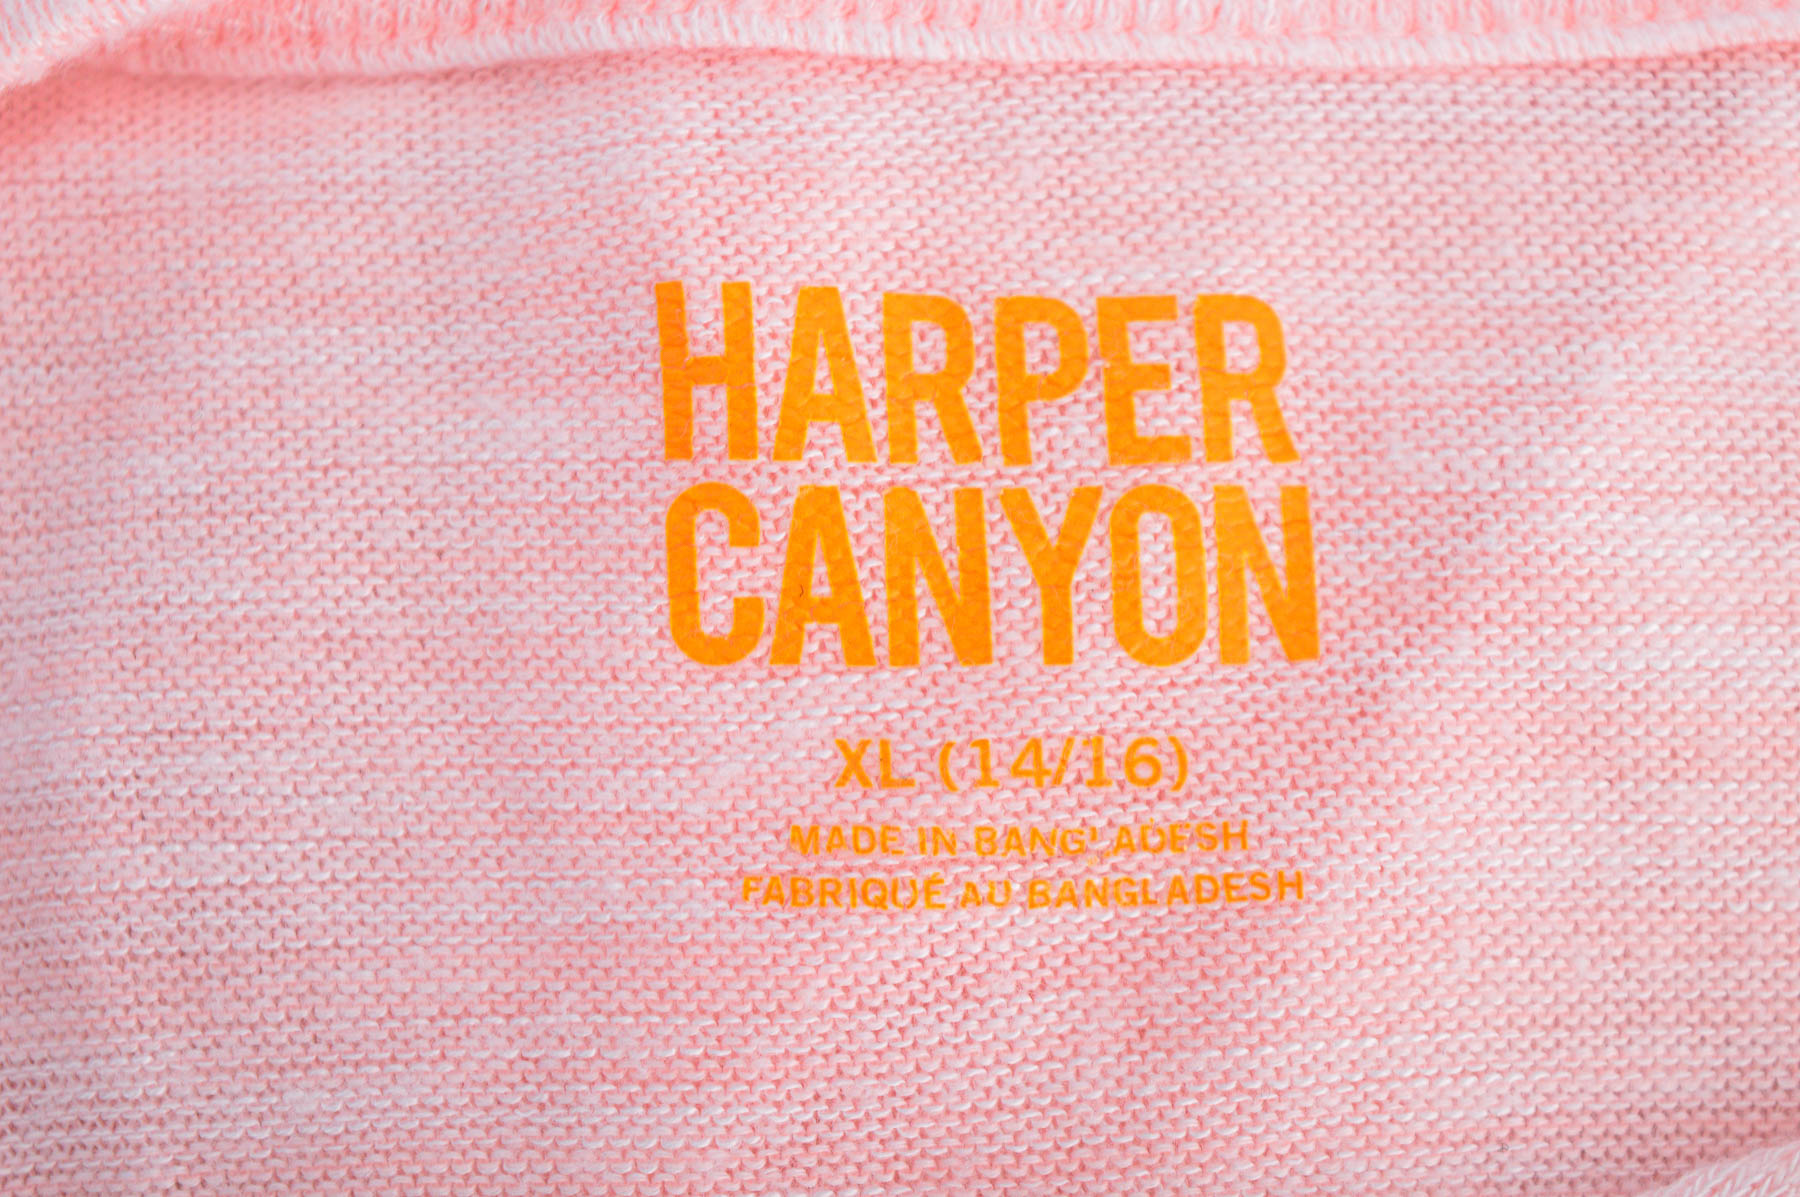 Sweter dla dziewczynki - Harper Canyon - 2